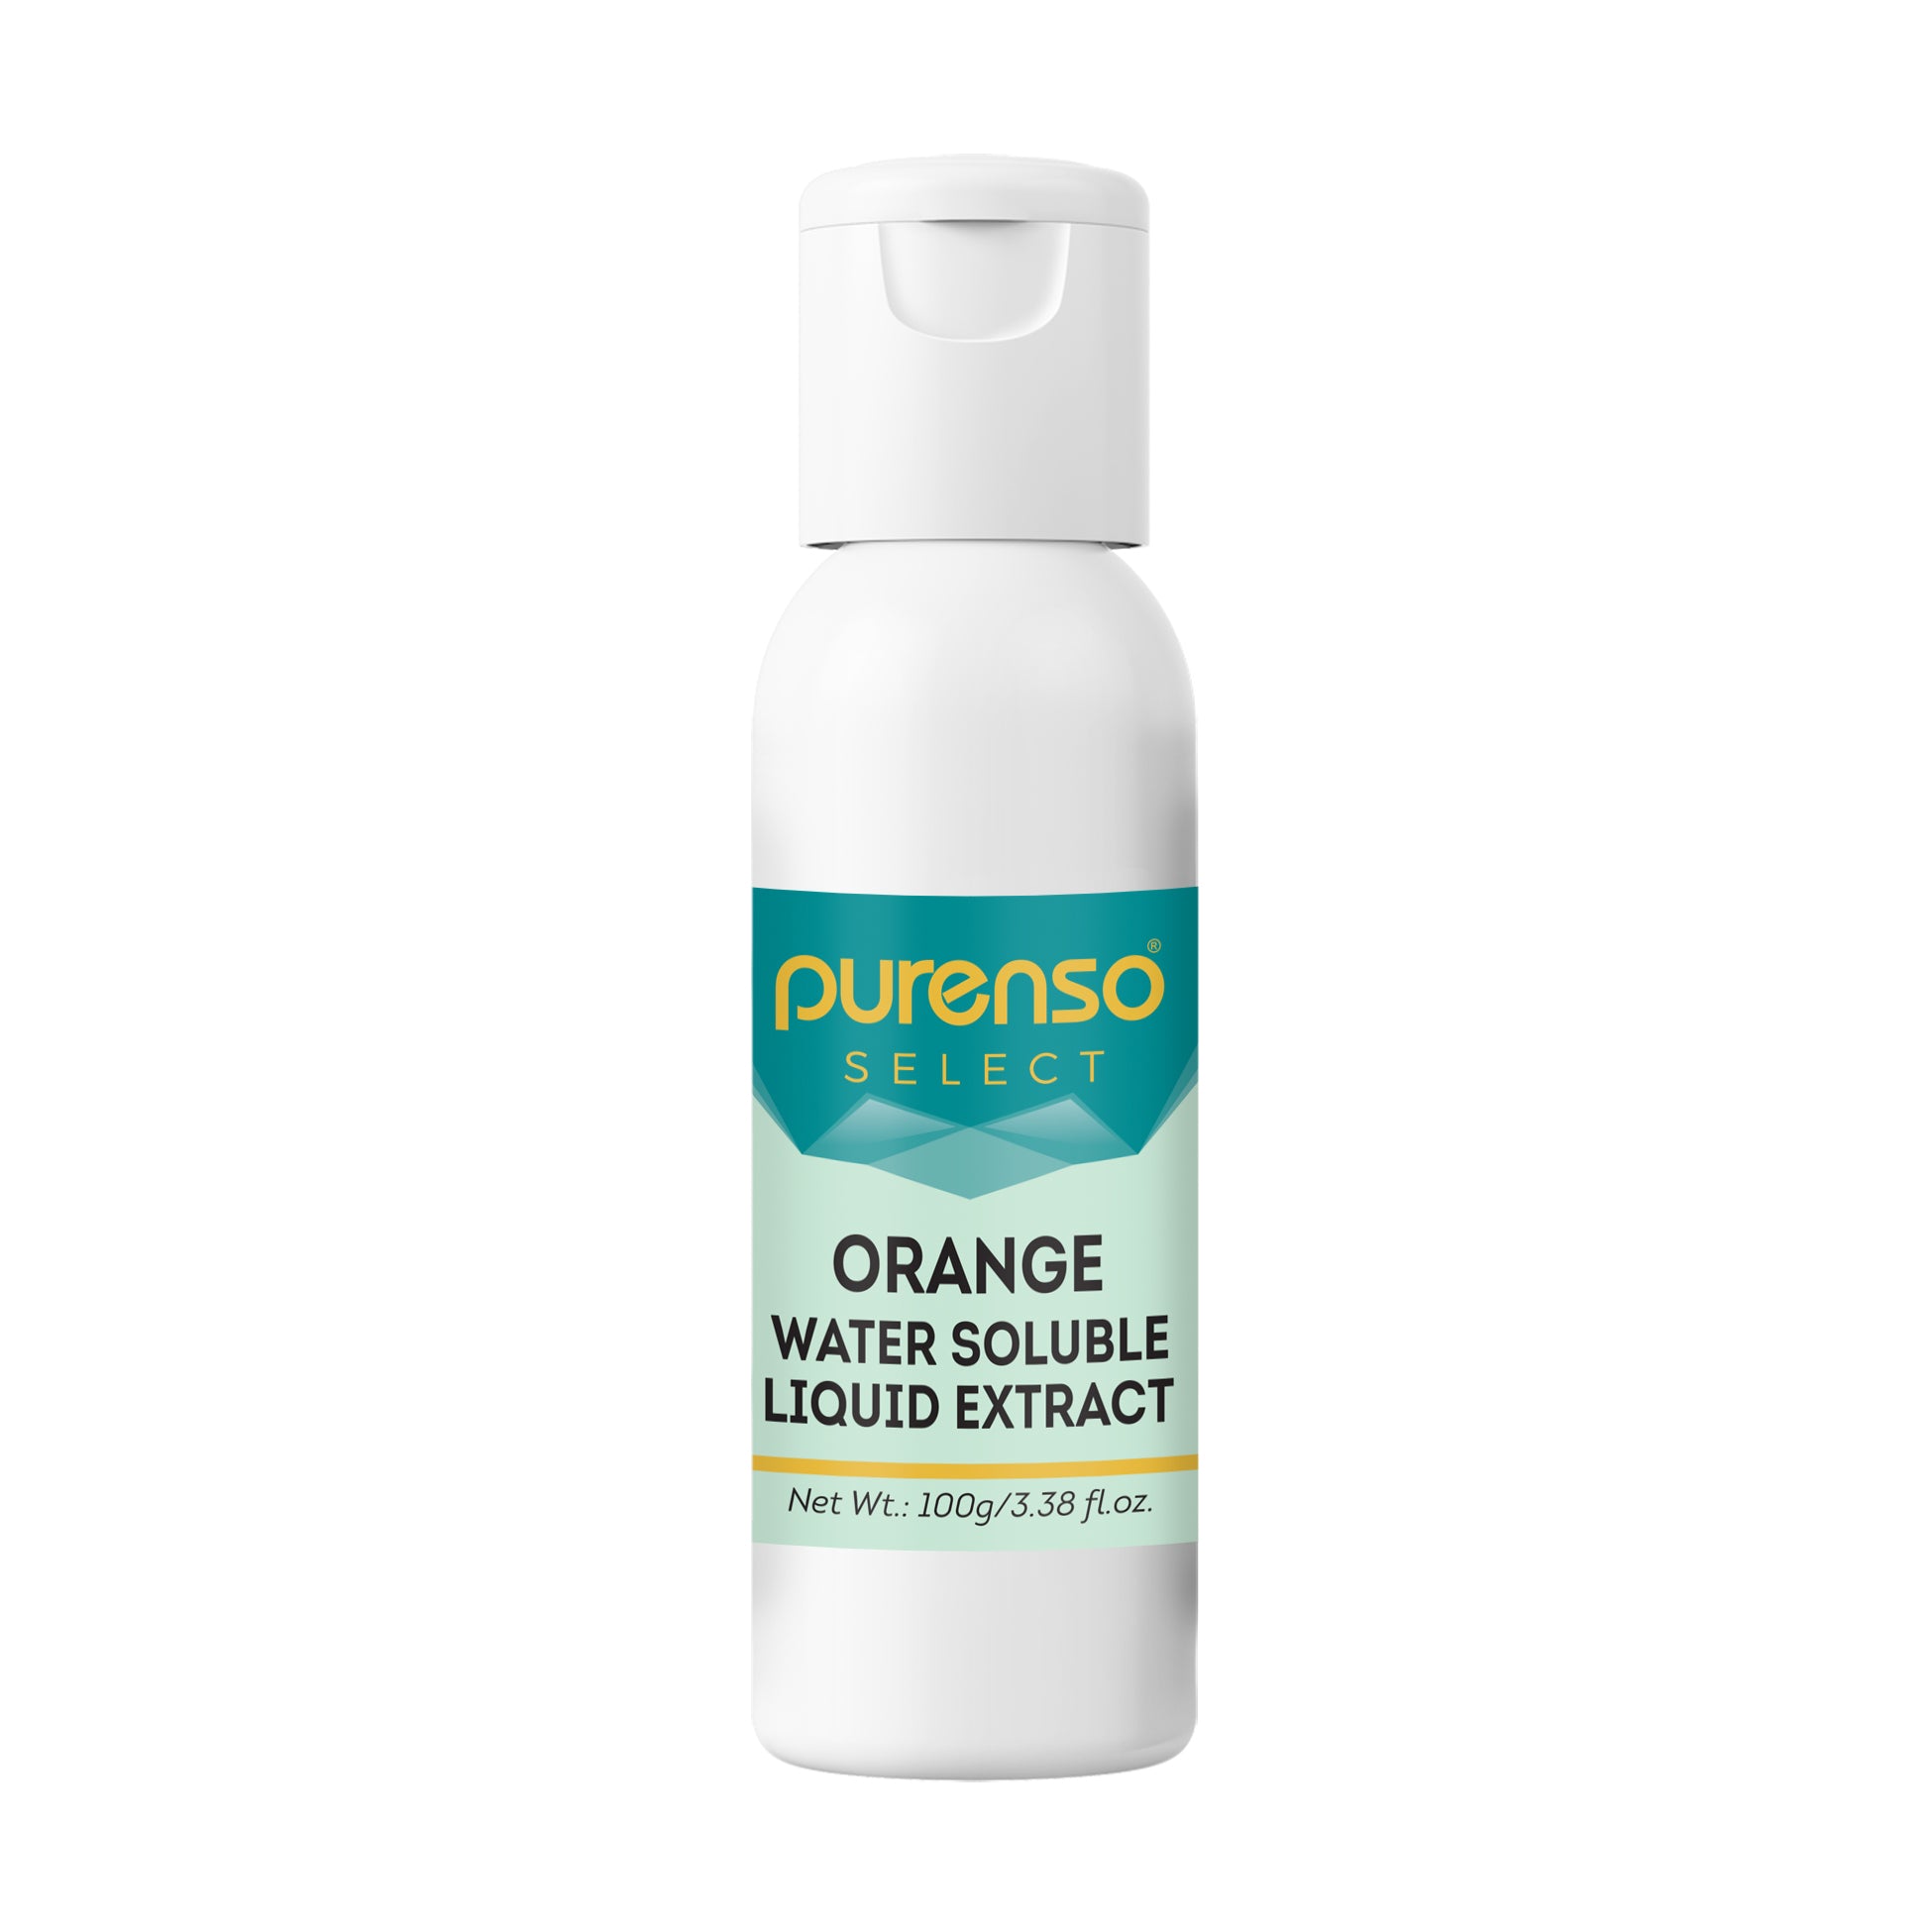 Orange Liquid Extract - Water Soluble